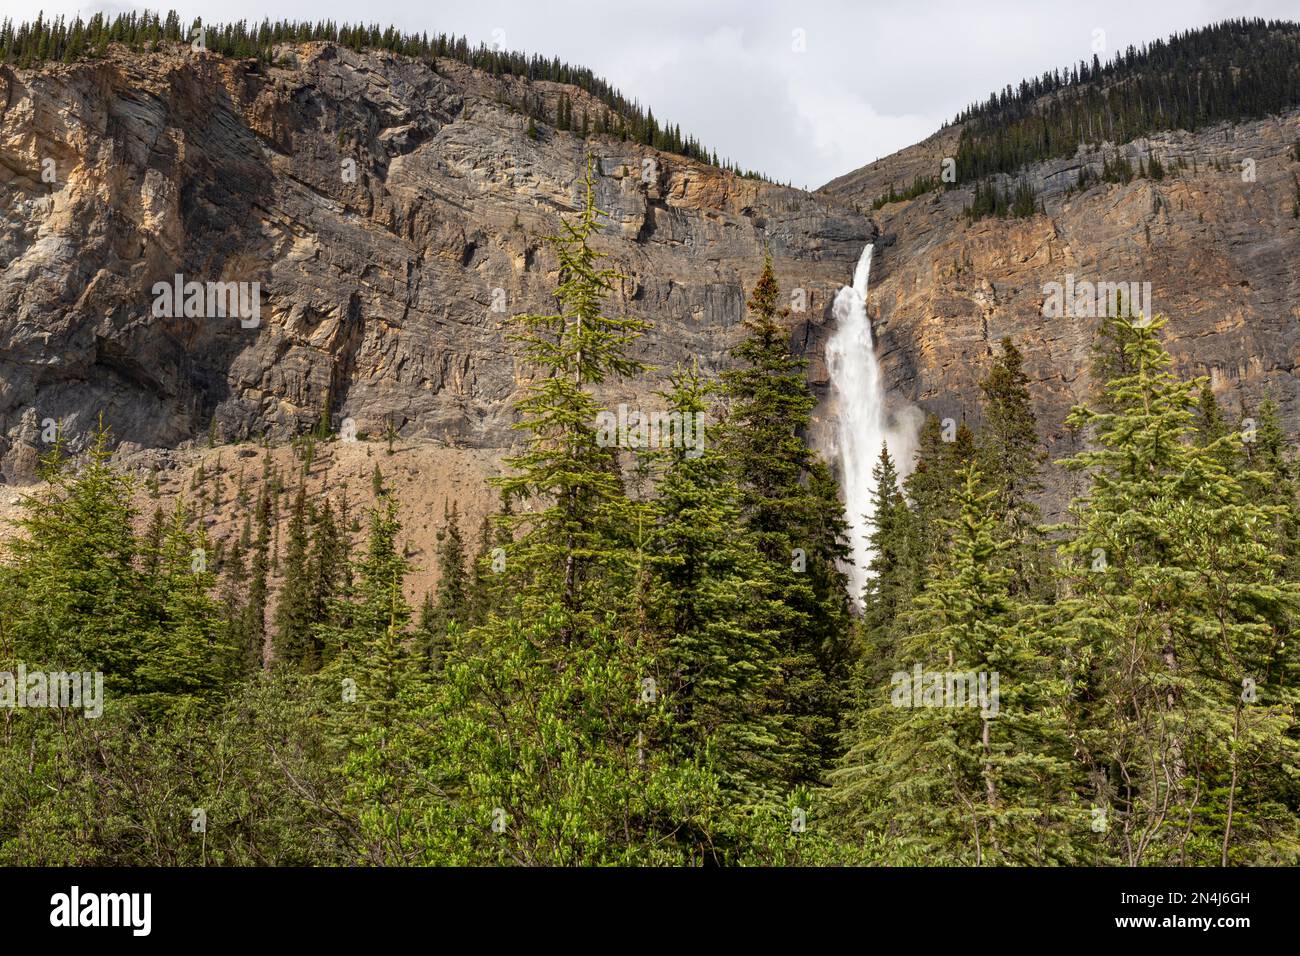 Dieser majestätische Blick auf die Takakkaw Falls, Kanadas zweithöchsten Wasserfall, wurde im Sommer 2014 gedreht. Die Gesamthöhe beträgt fast 1.000 Meter. Die Stockfoto